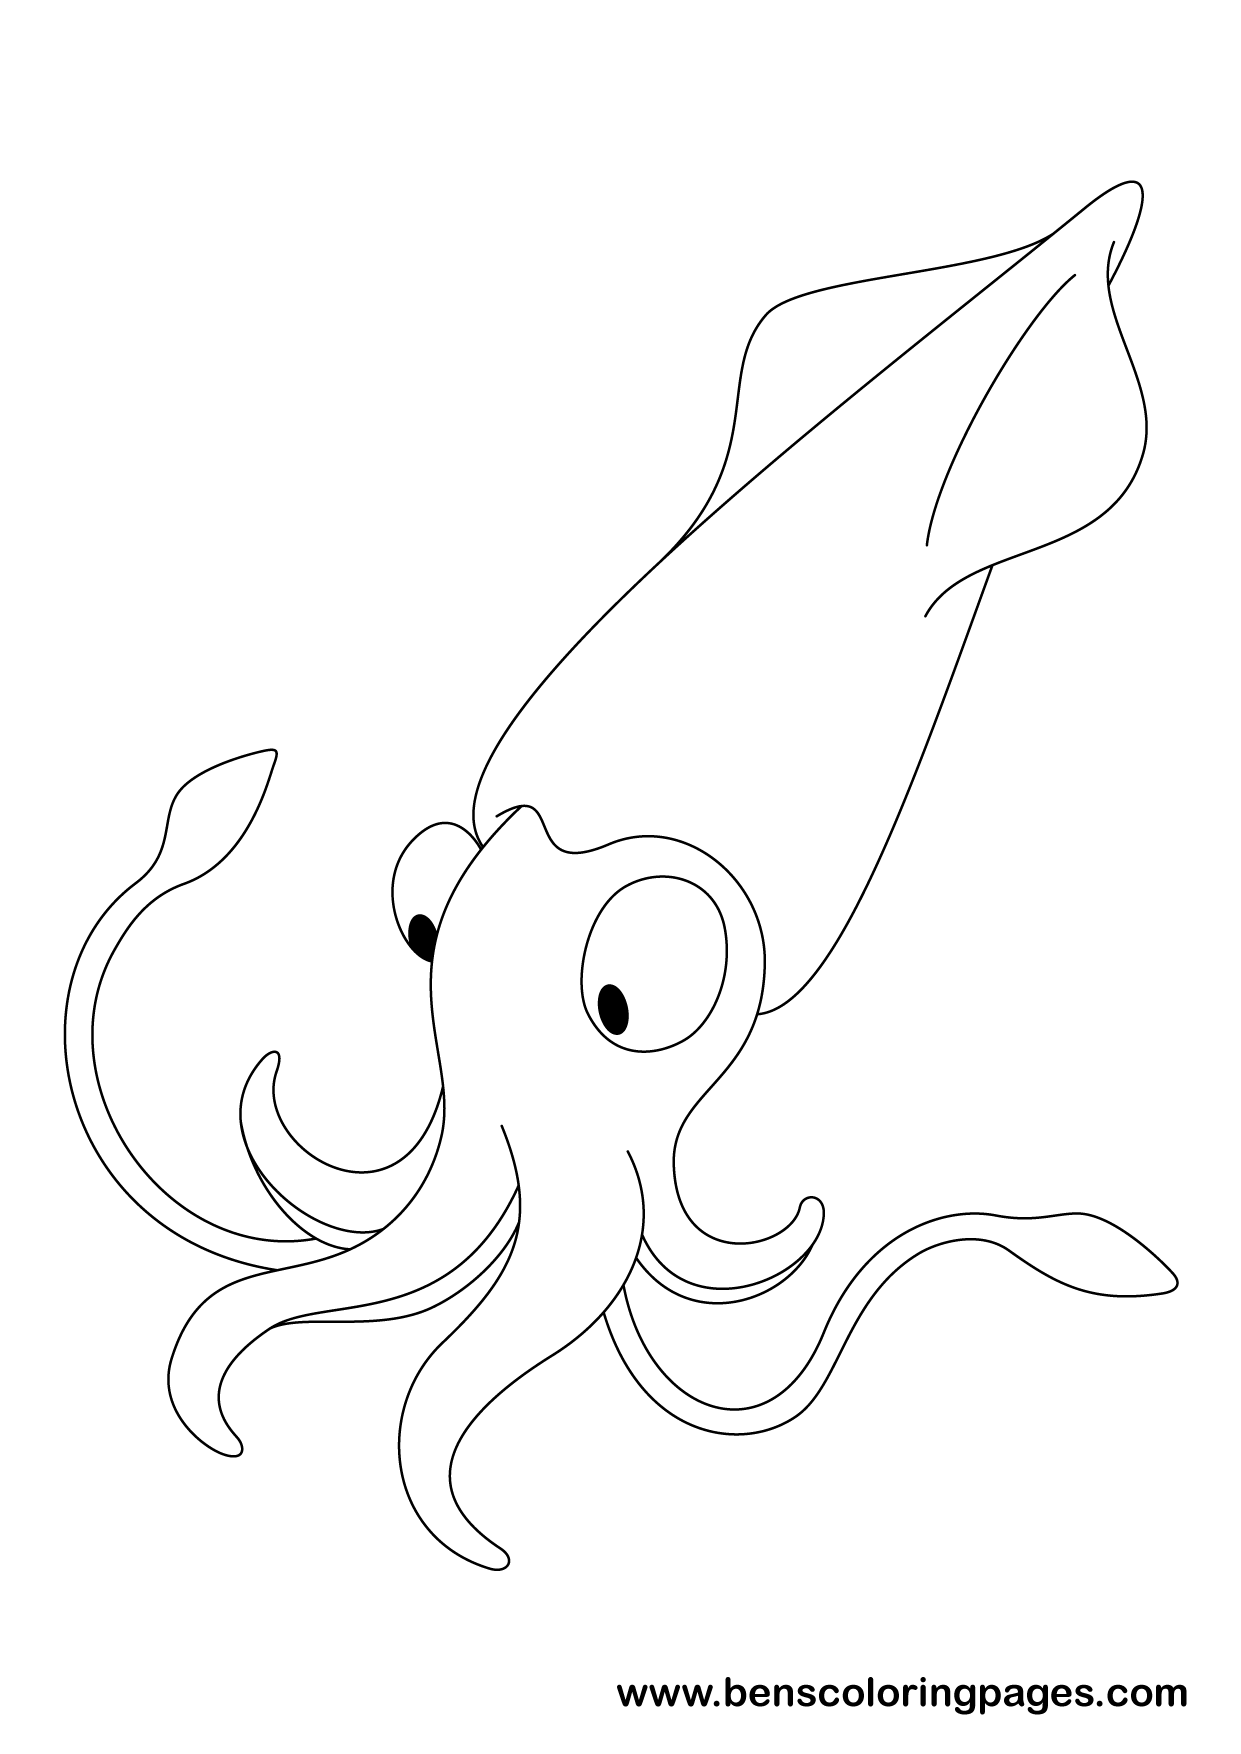 Squid coloring design